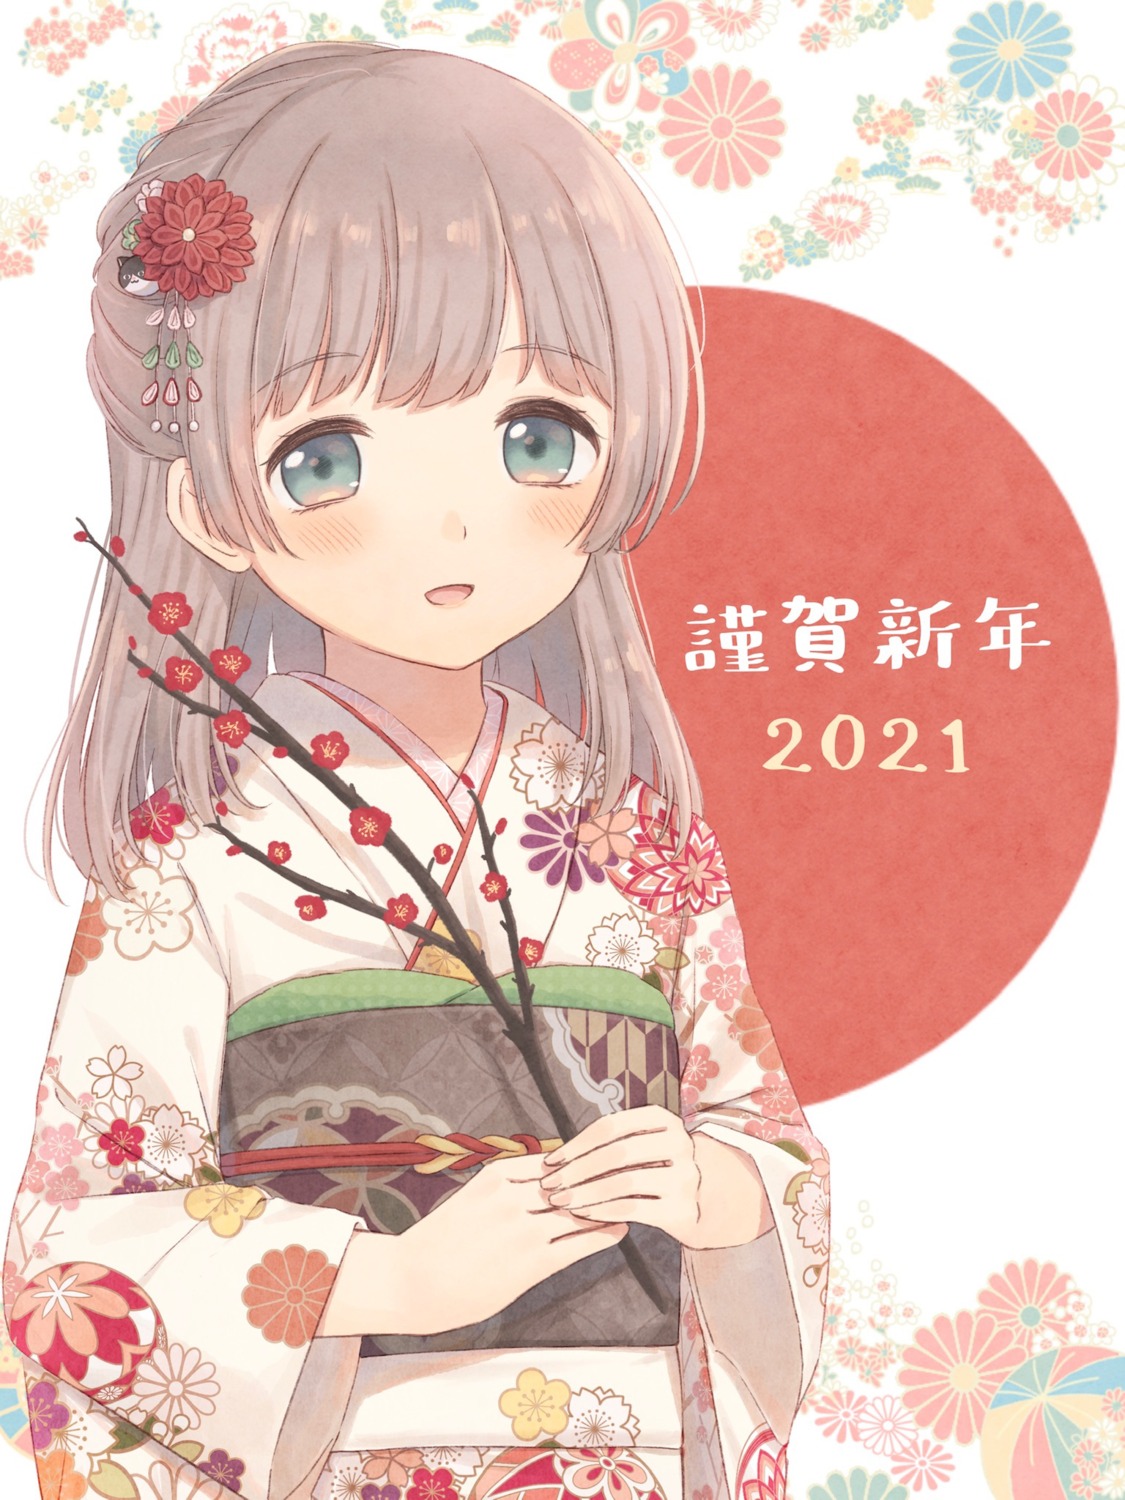 kazane_mari kimono